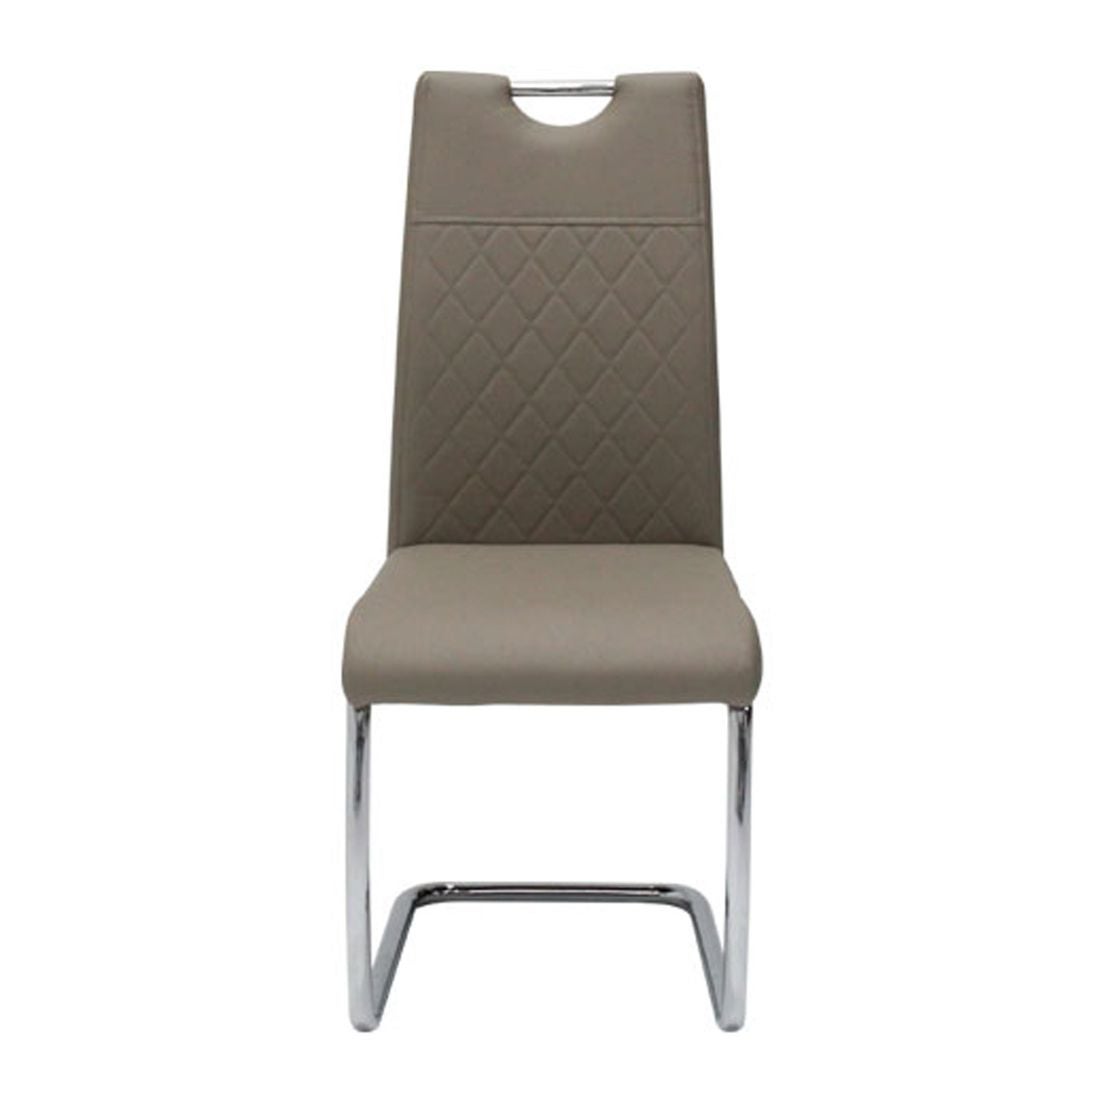 เก้าอี้ทานอาหาร เก้าอี้ไม้เบาะหนัง รุ่น Tata-SB Design Square